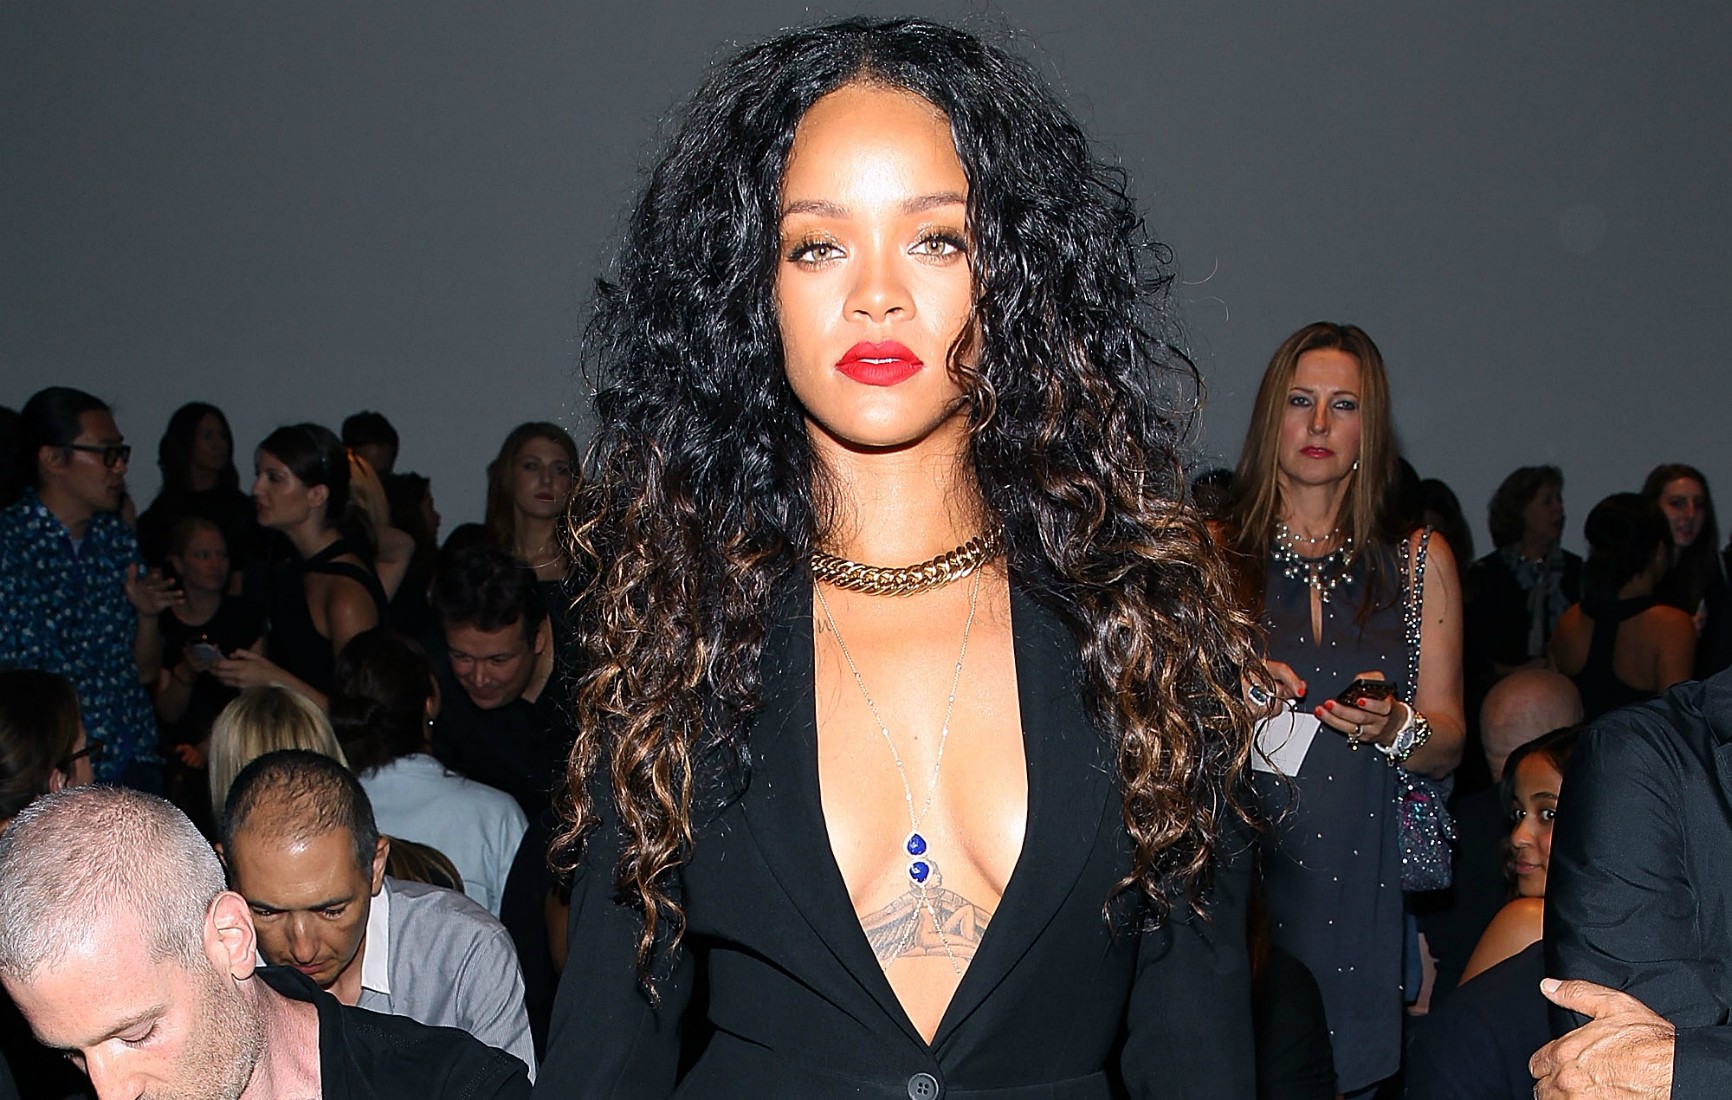 Faltou alguma coisa? Rihanna chama a atenção com decotão e figurino  inusitado em desfile - Monet